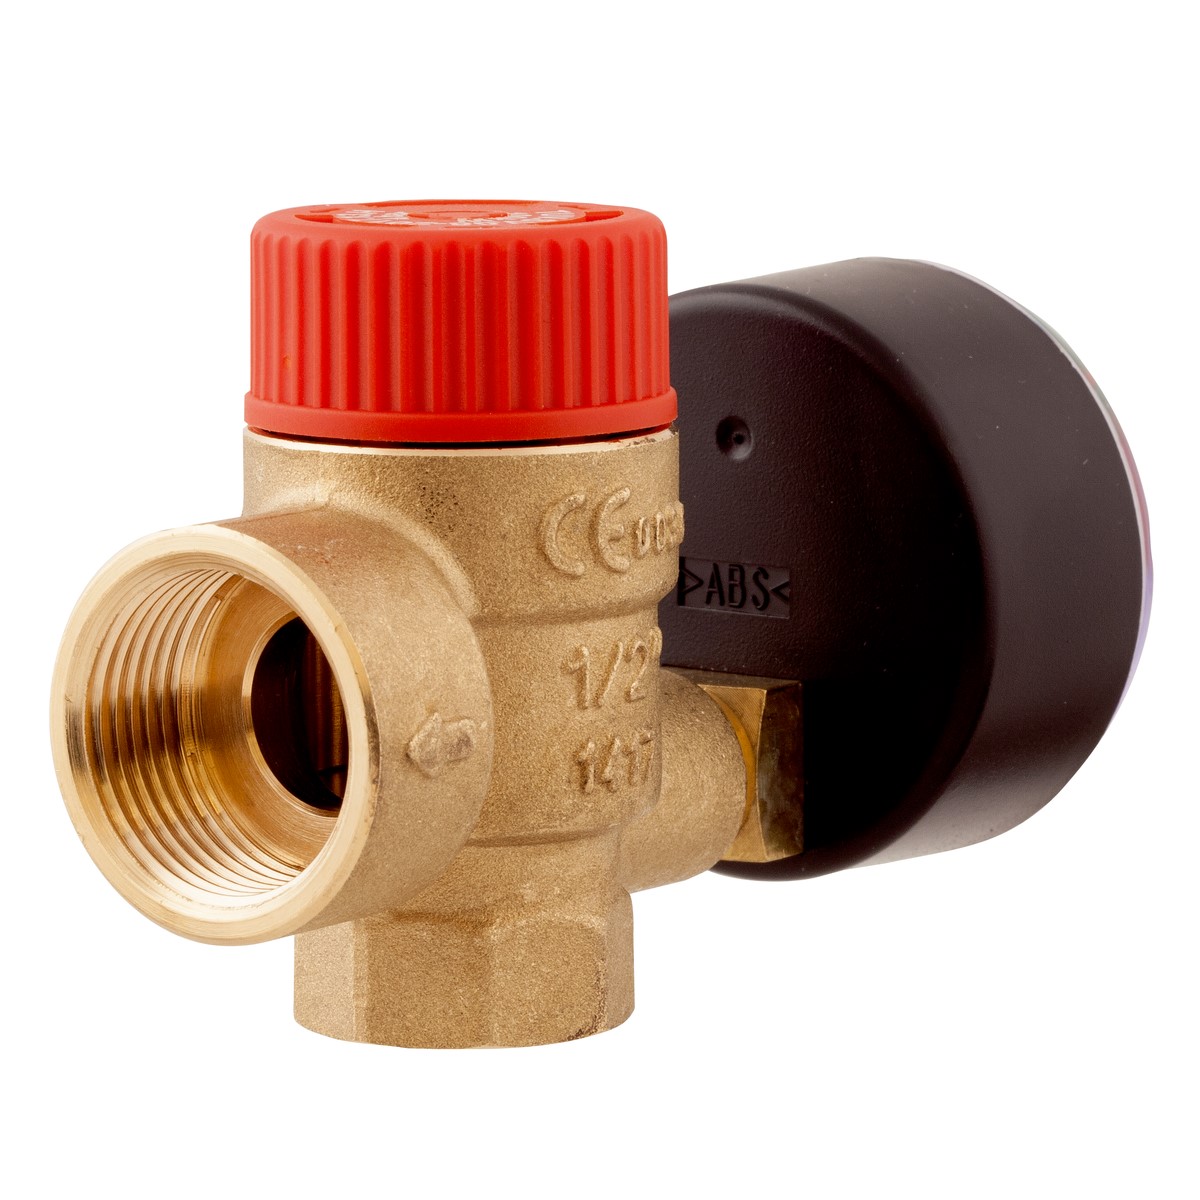 Pojistný ventil pro ústřední topení MS s výstupem pro manometr GW G¼", 2 bary, Rp½" x Rp¾" - AFRISO.CZ